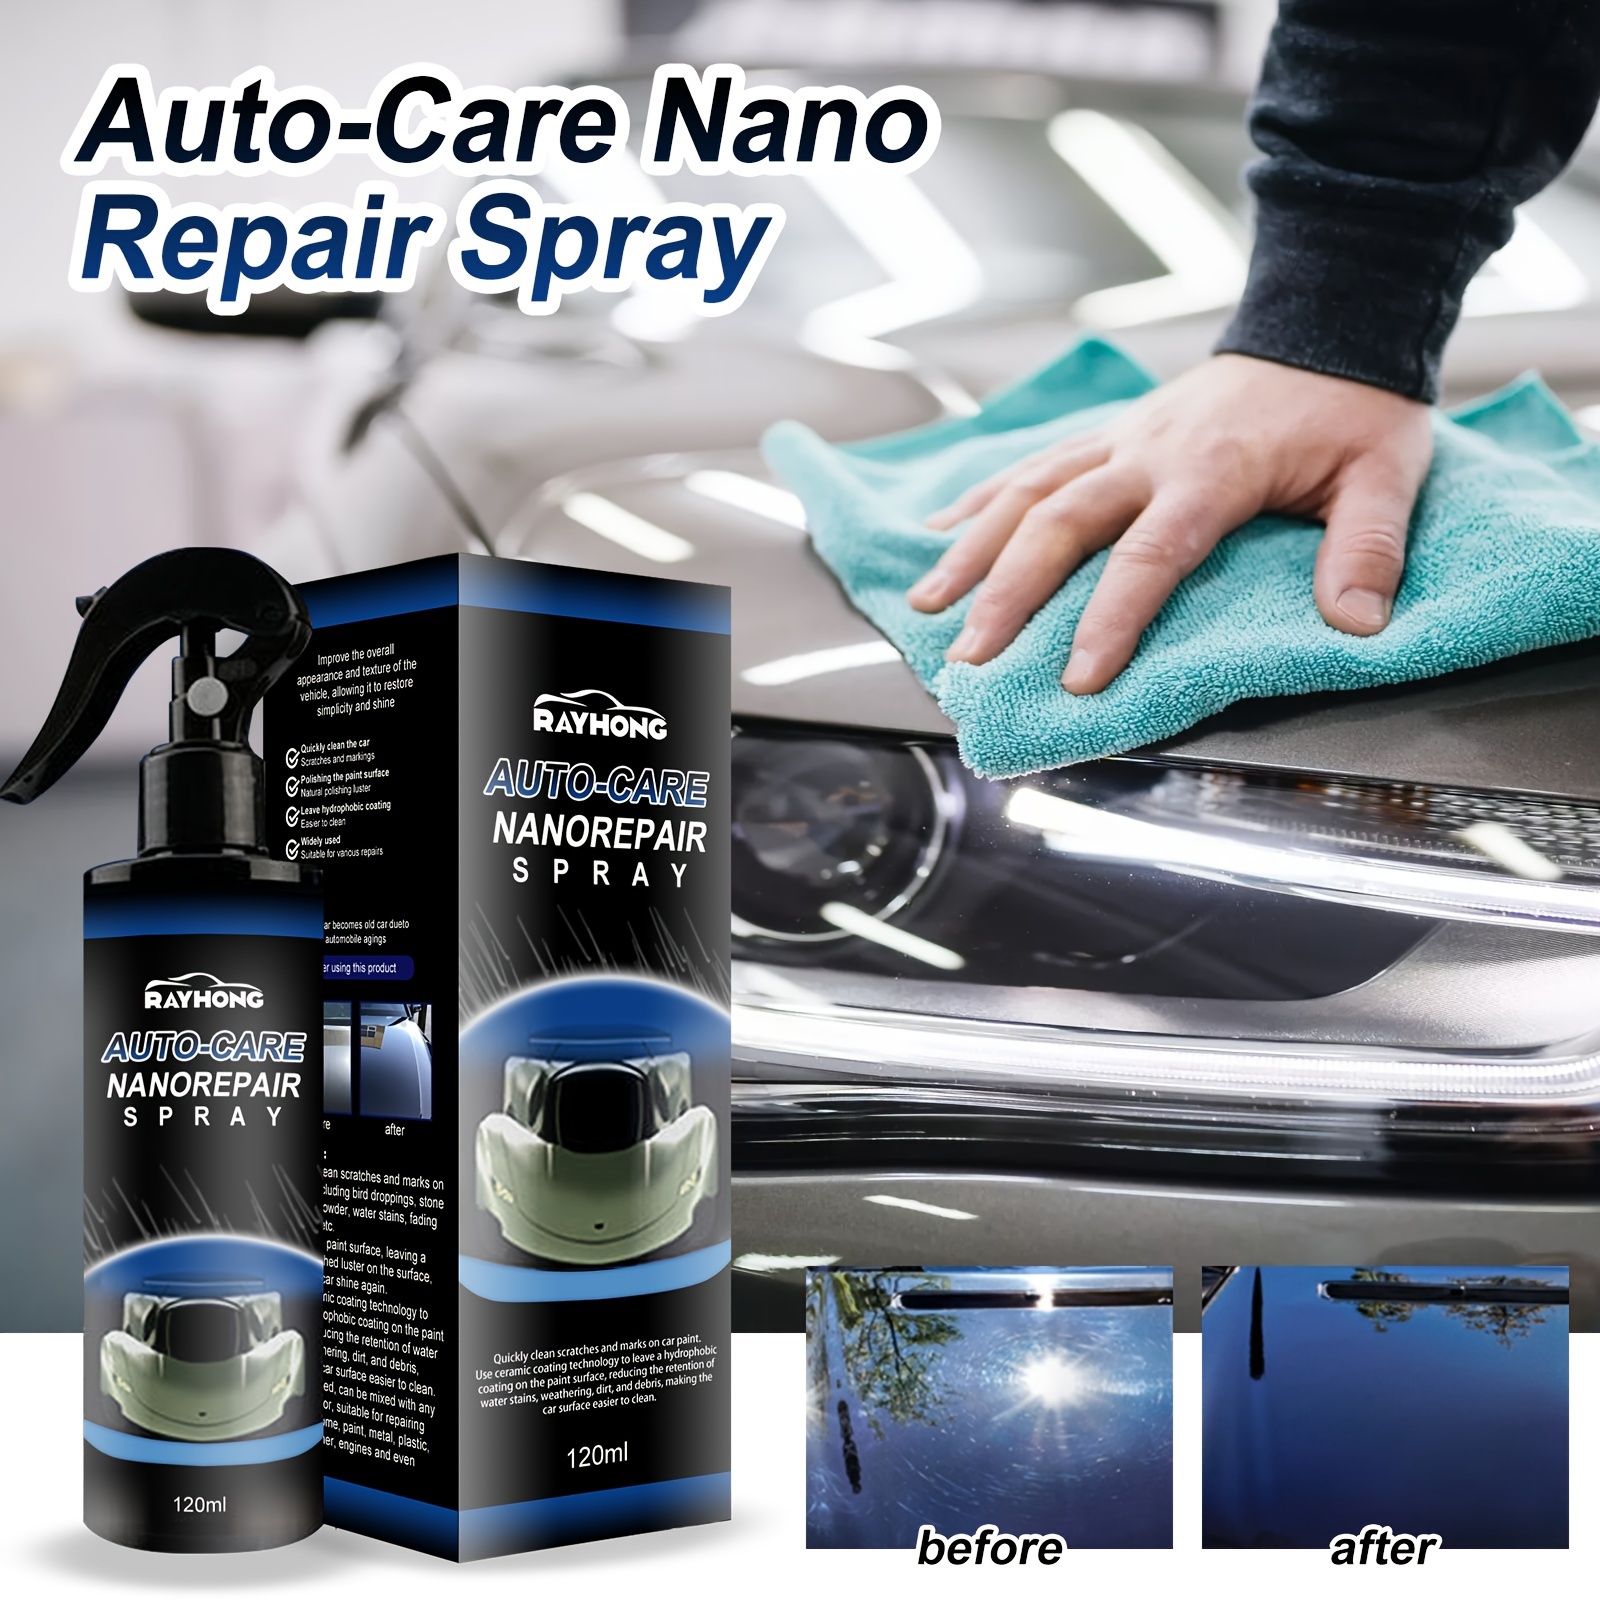 Nano Coating Technology Spray, remplace la cire de voiture